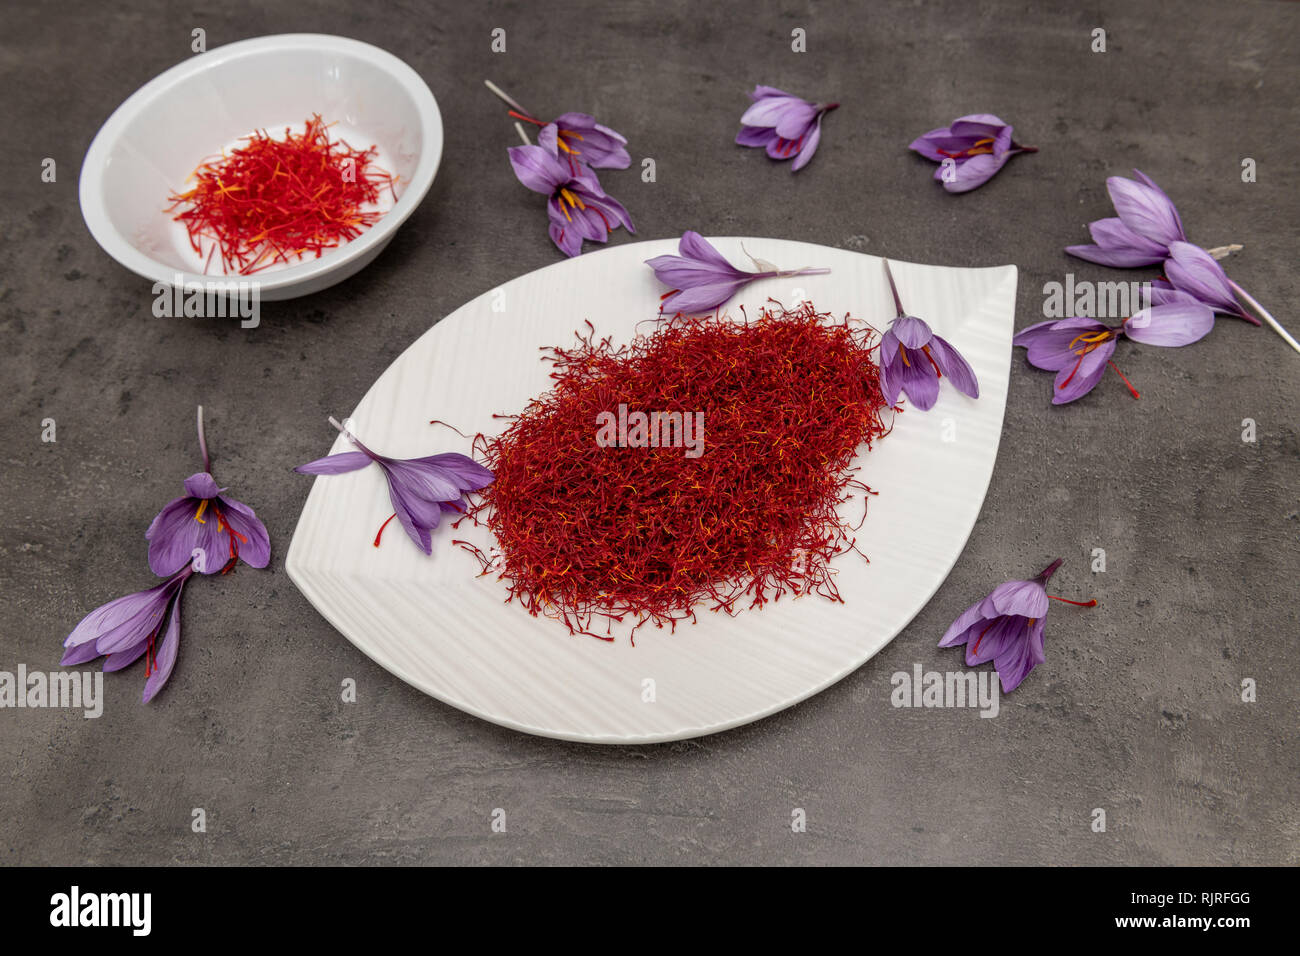 Saffron (Crocus sativus), spice for cooking Stock Photo